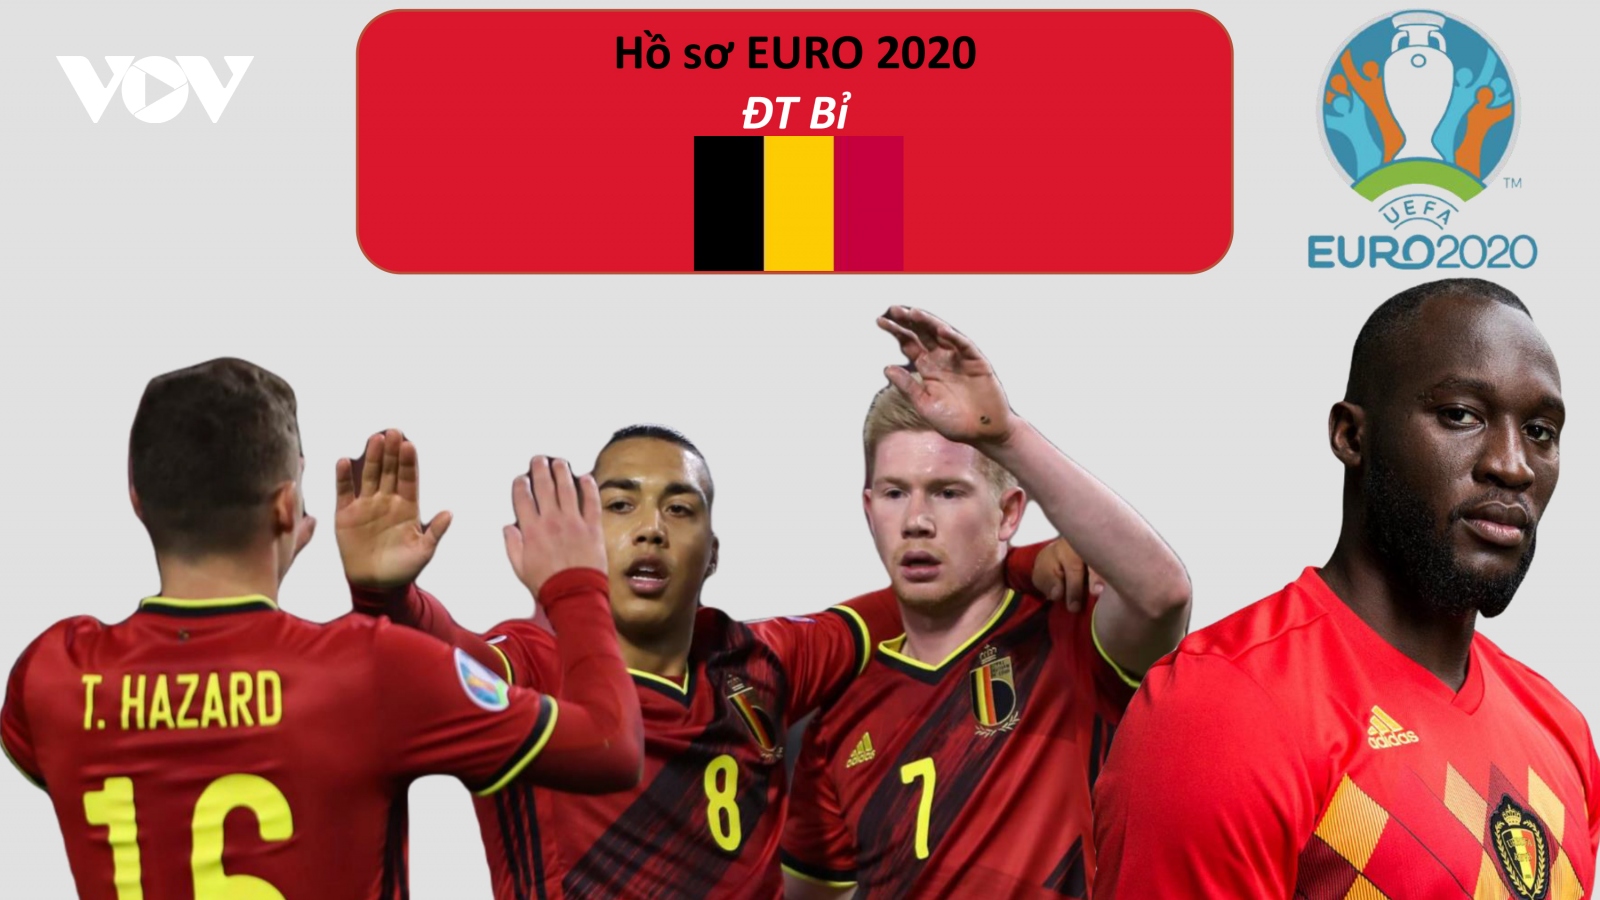 Hồ sơ các ĐT dự EURO 2020: Đội tuyển Bỉ